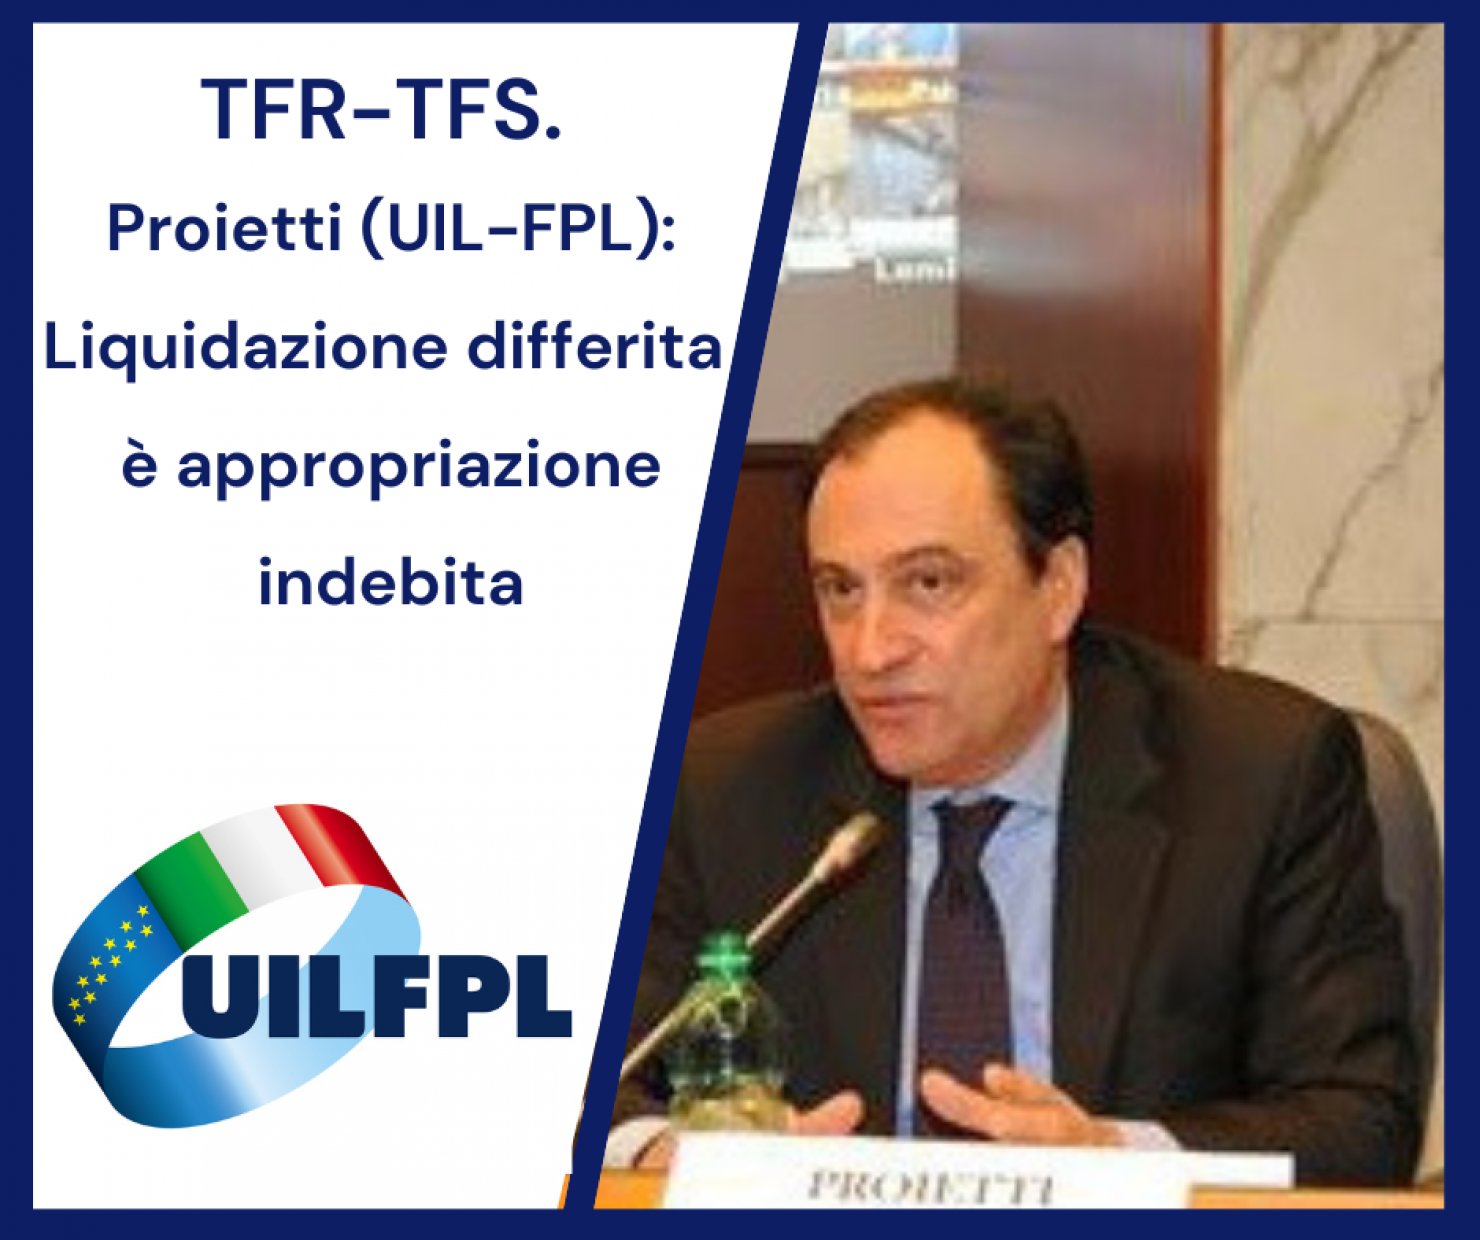 TFR-TFS.Proietti (UIL-FPL): liquidazione differita è appropriazione indebita